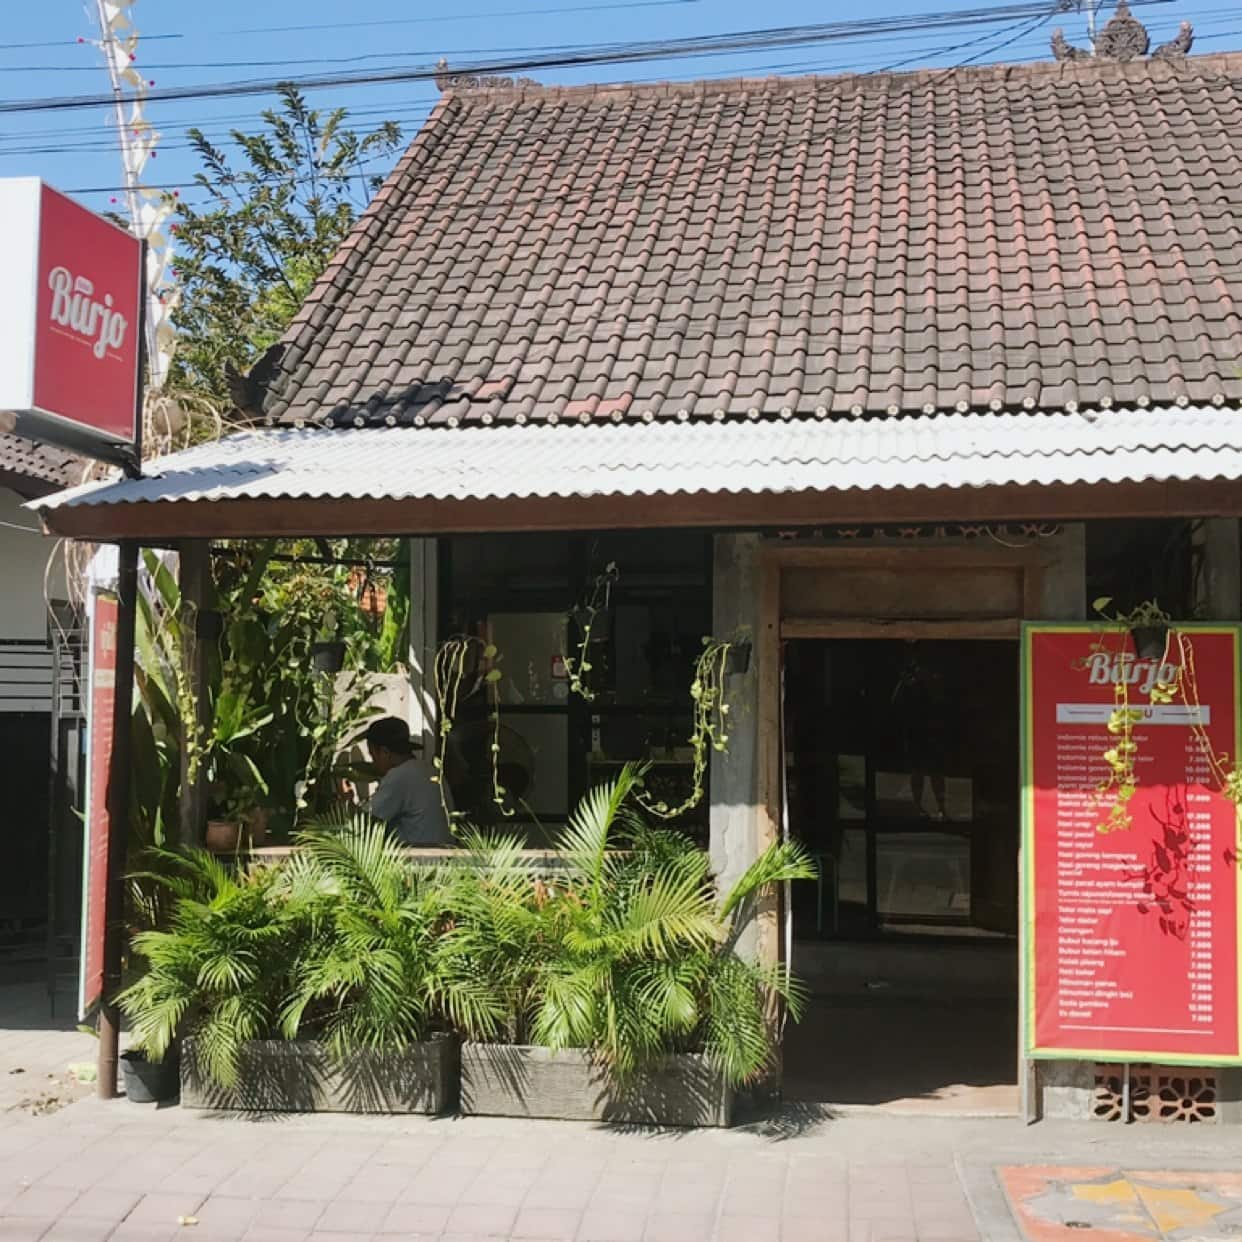 Kedai Burjo Kerobokan Kelod Bali